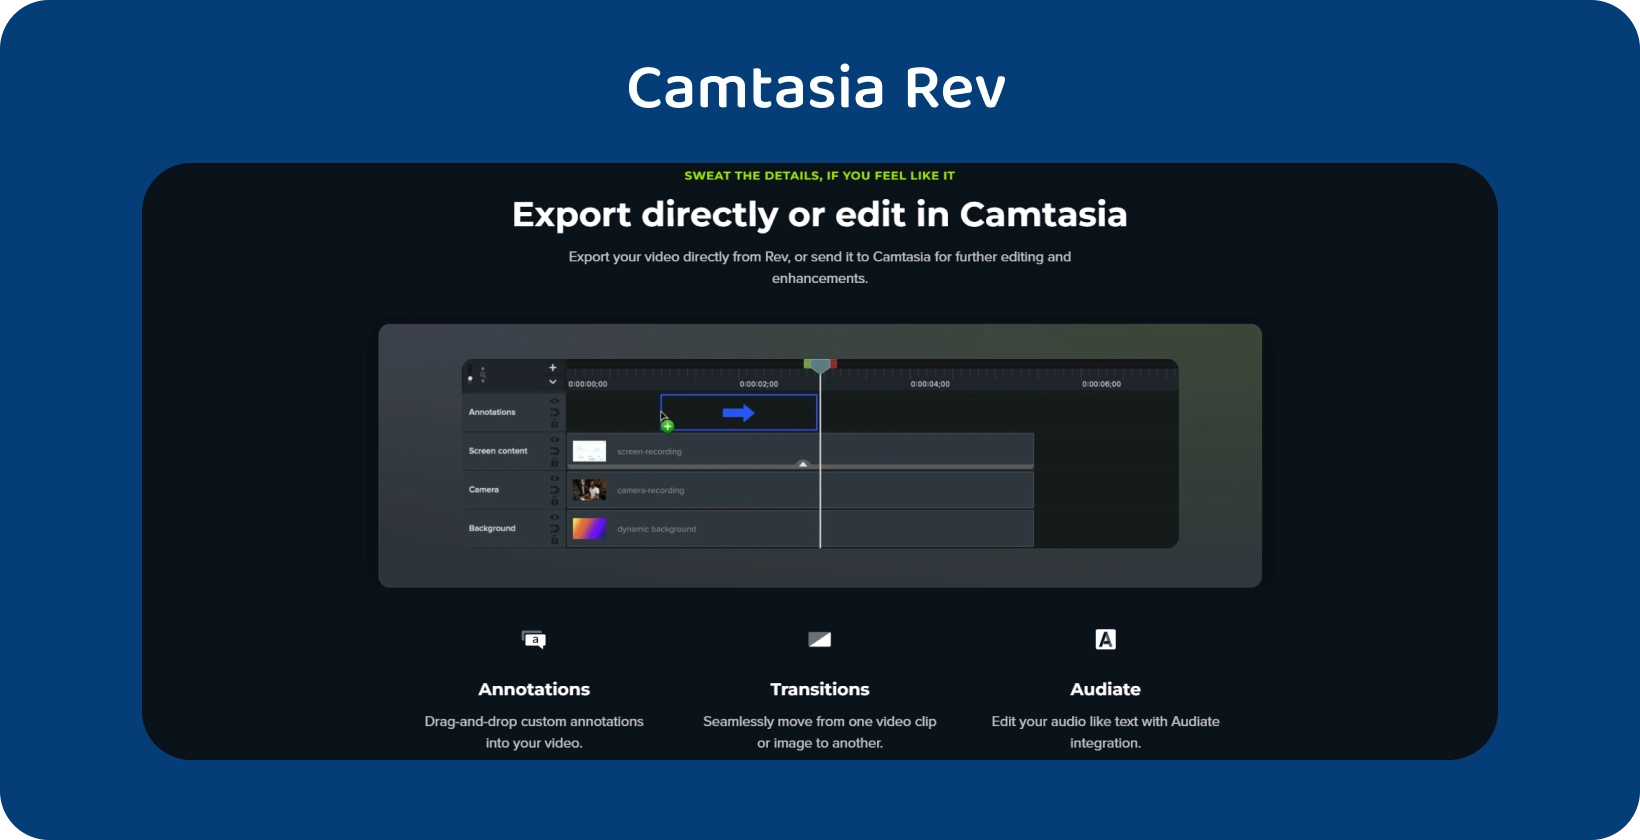 Camtasia interface met de optie Ondertiteling exporteren gemarkeerd, wat wijst op een gestroomlijnde ondertitelingsworkflow.